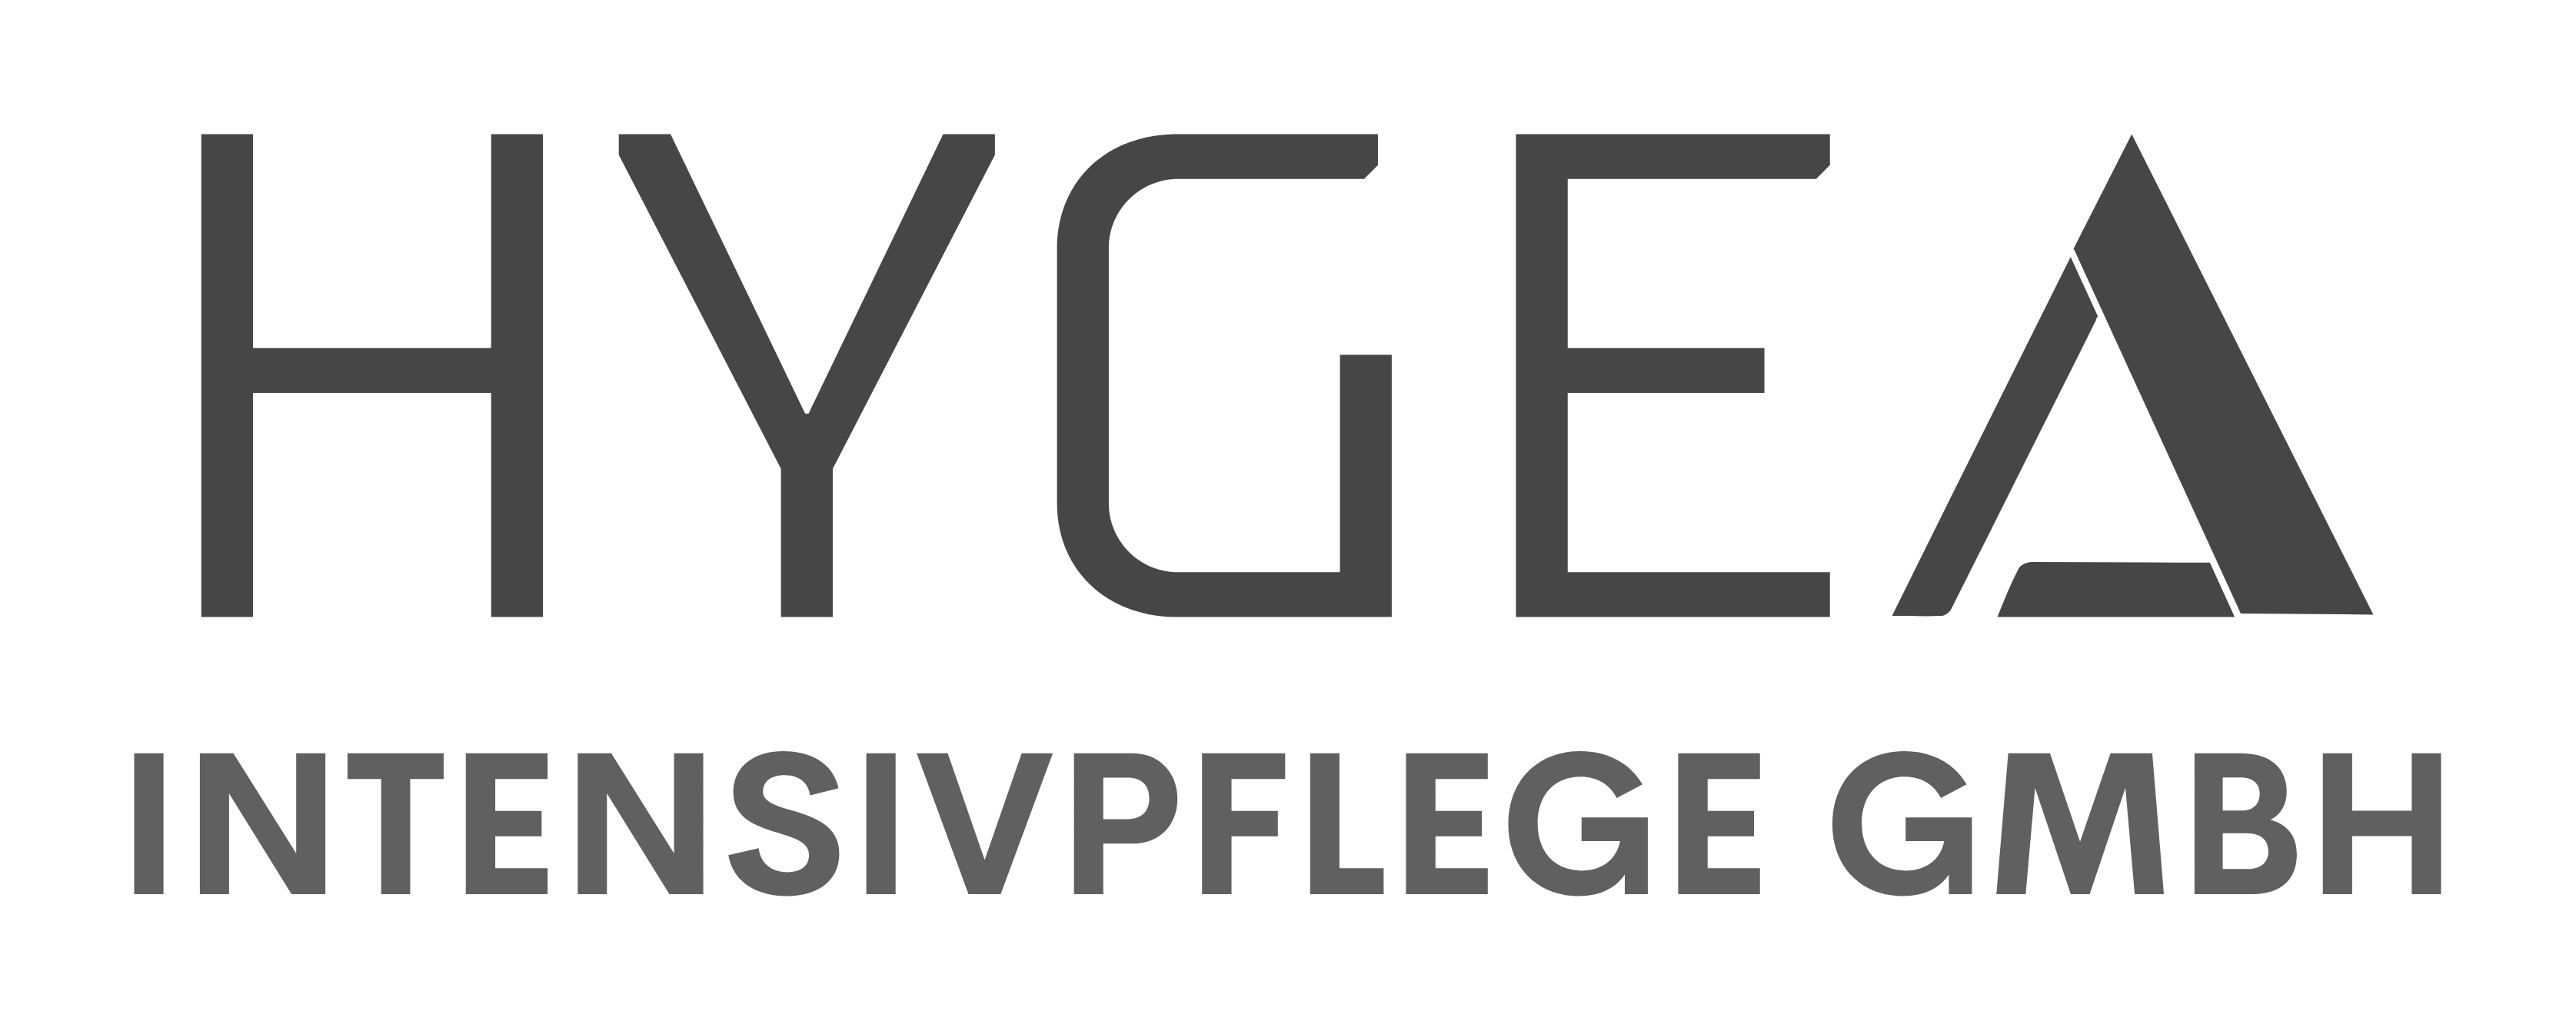 Hygea Intensivpflege GmbH - Ihr Ambulante Intensivpflegedienst in Ruhrgebiet 